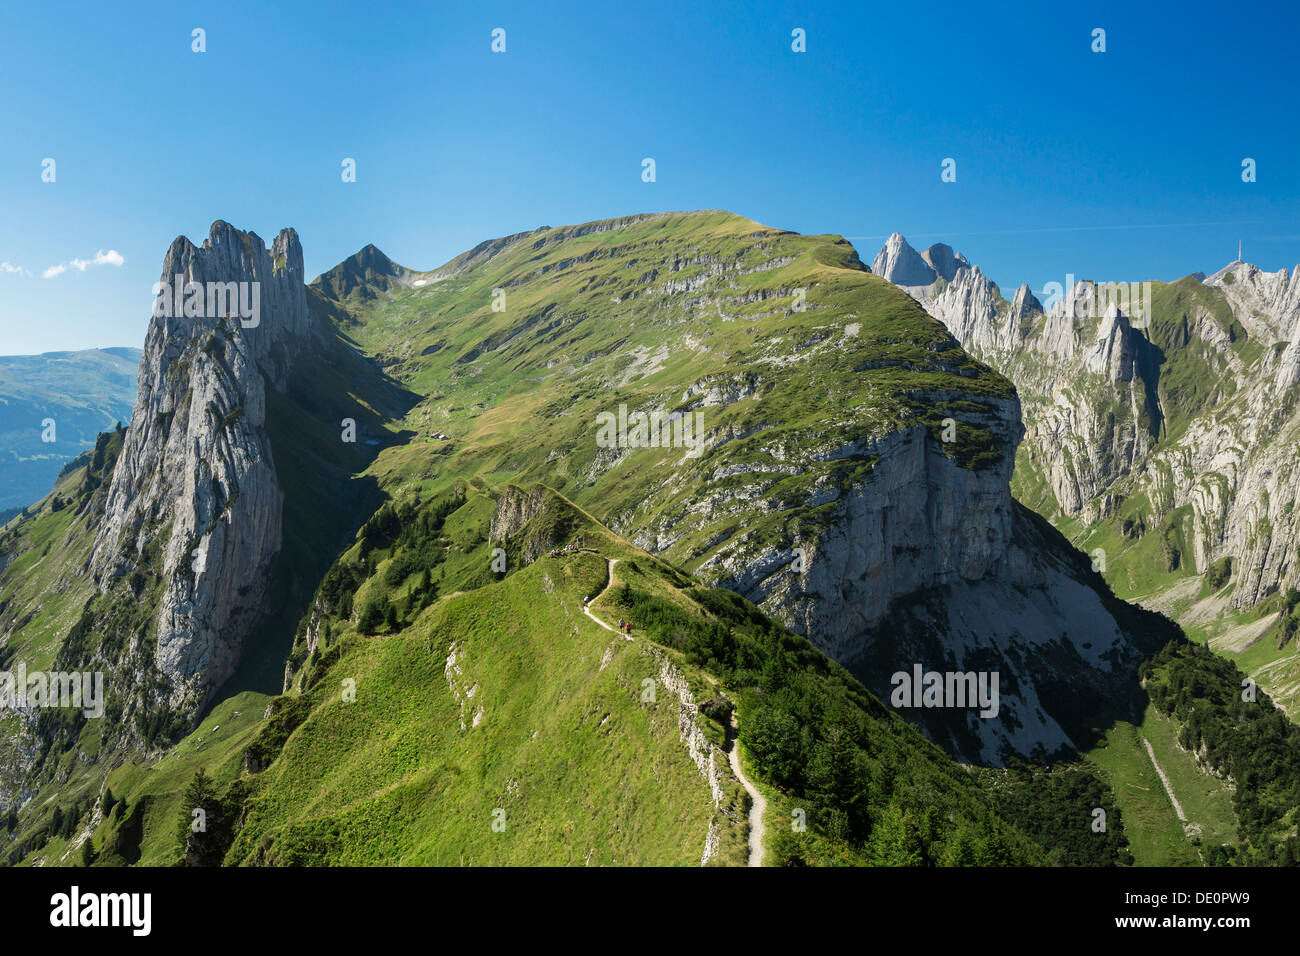 Aussicht über den Alpstein-Bereich mit dem Kreuzberge Berge, Alpstein,  Appenzell, Schweiz, Europa Stockfotografie - Alamy